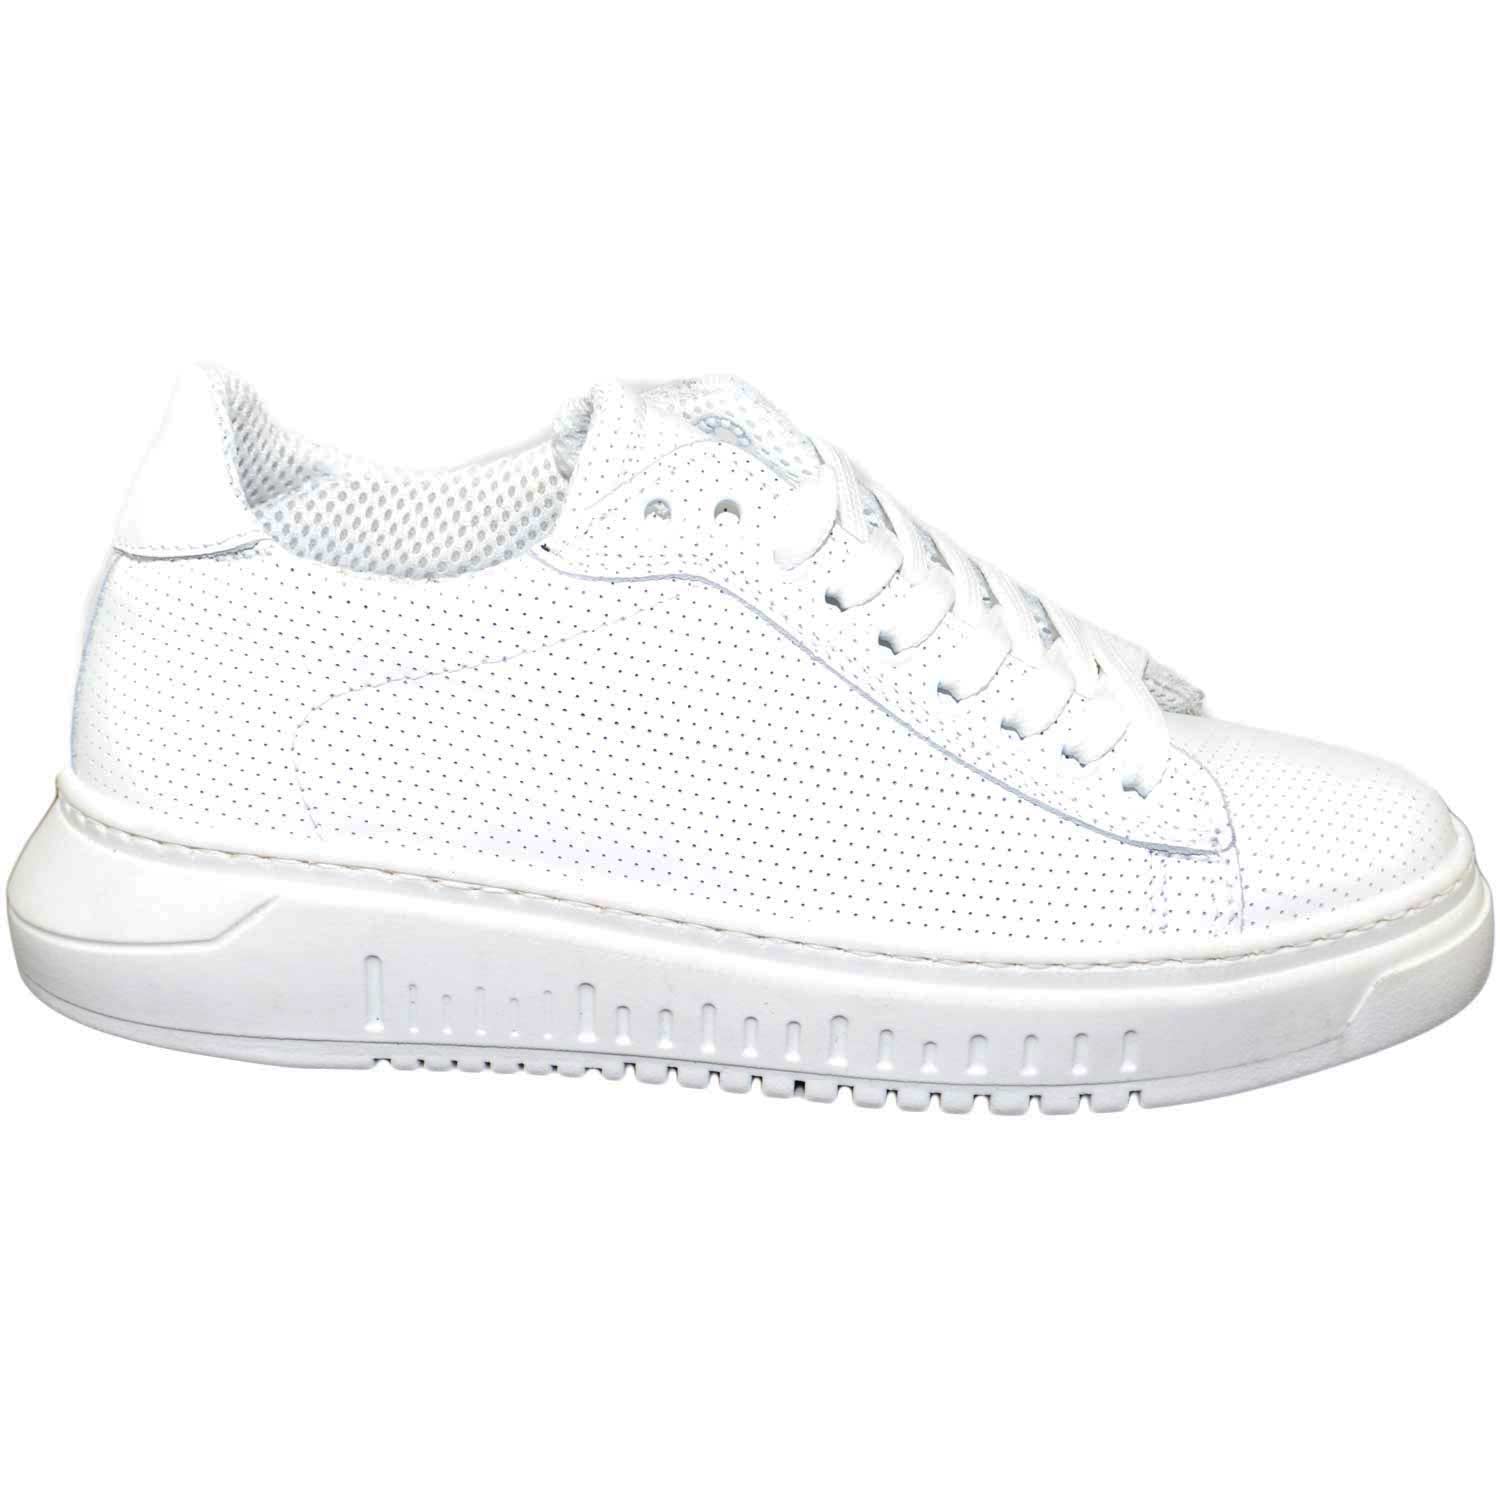 Sneakers bassa bianca uomo fondo doppio army vera pelle microforata made in italy moda giovanile.